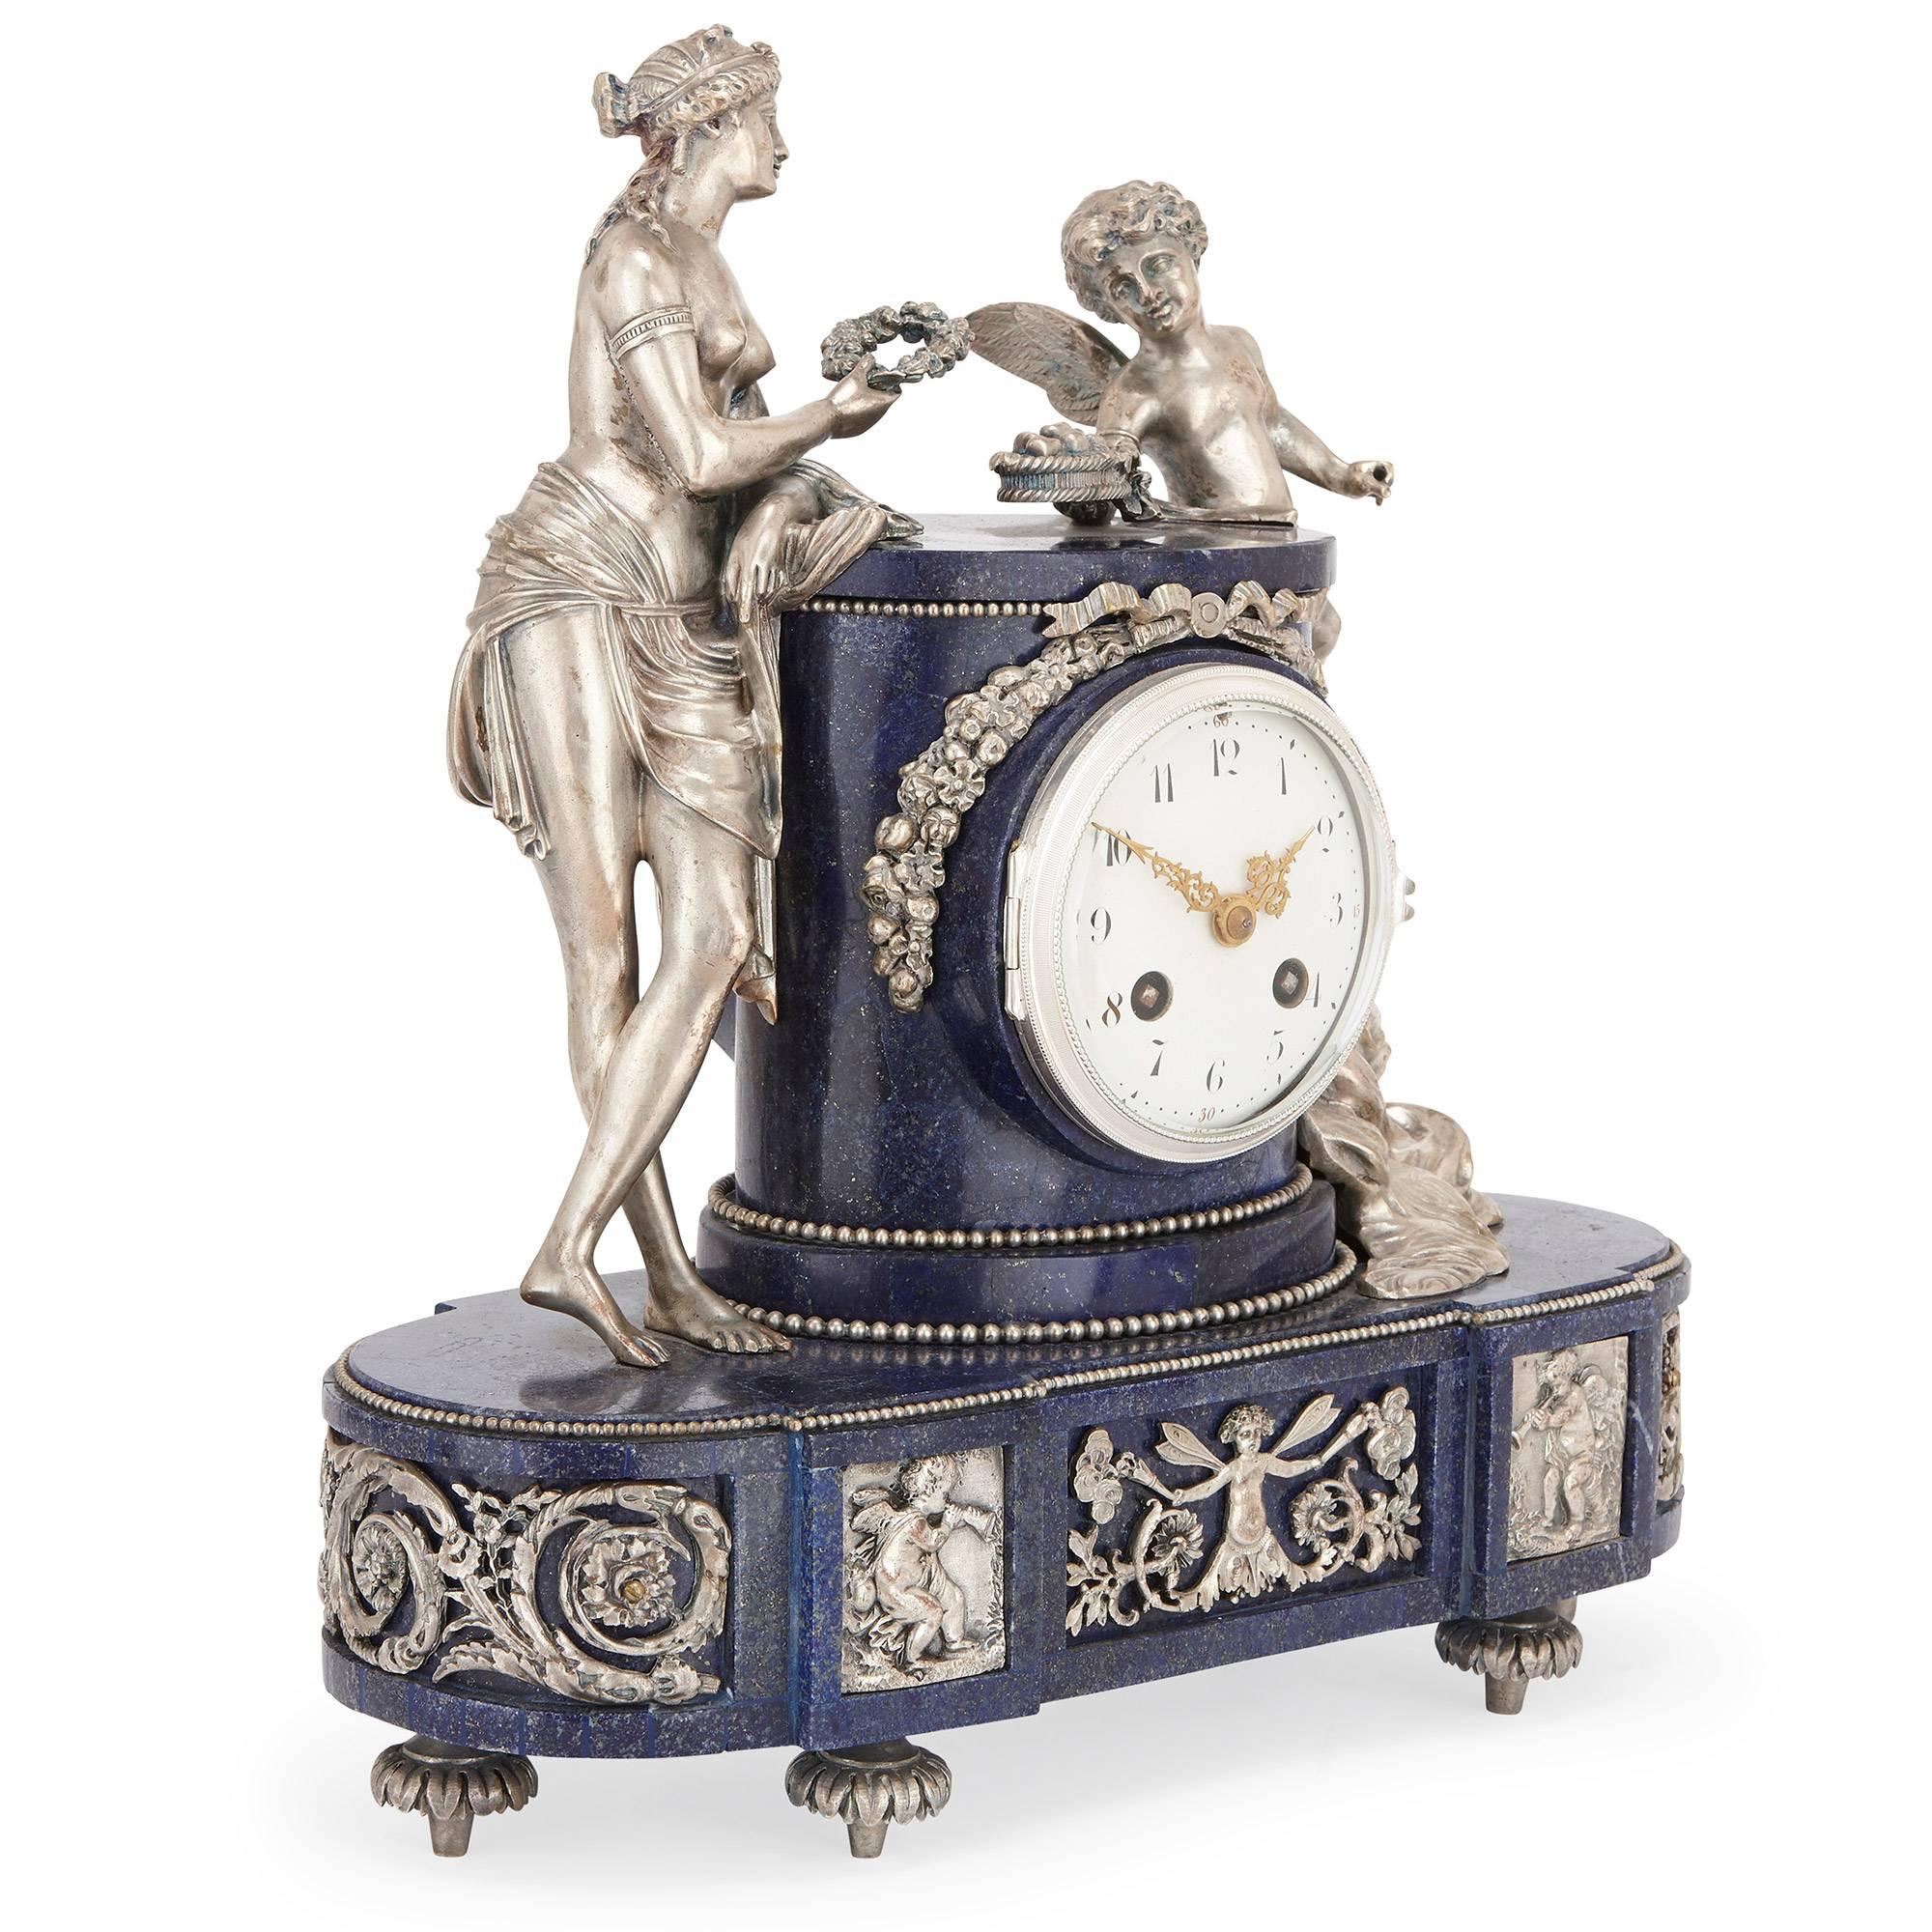 Ce magnifique ensemble de pendules françaises anciennes à trois pièces comprend une pendule centrale et une paire de candélabres latéraux. 

L'horloge centrale présente un cadran central circulaire entouré d'un boîtier en lapis-lazuli et décoré